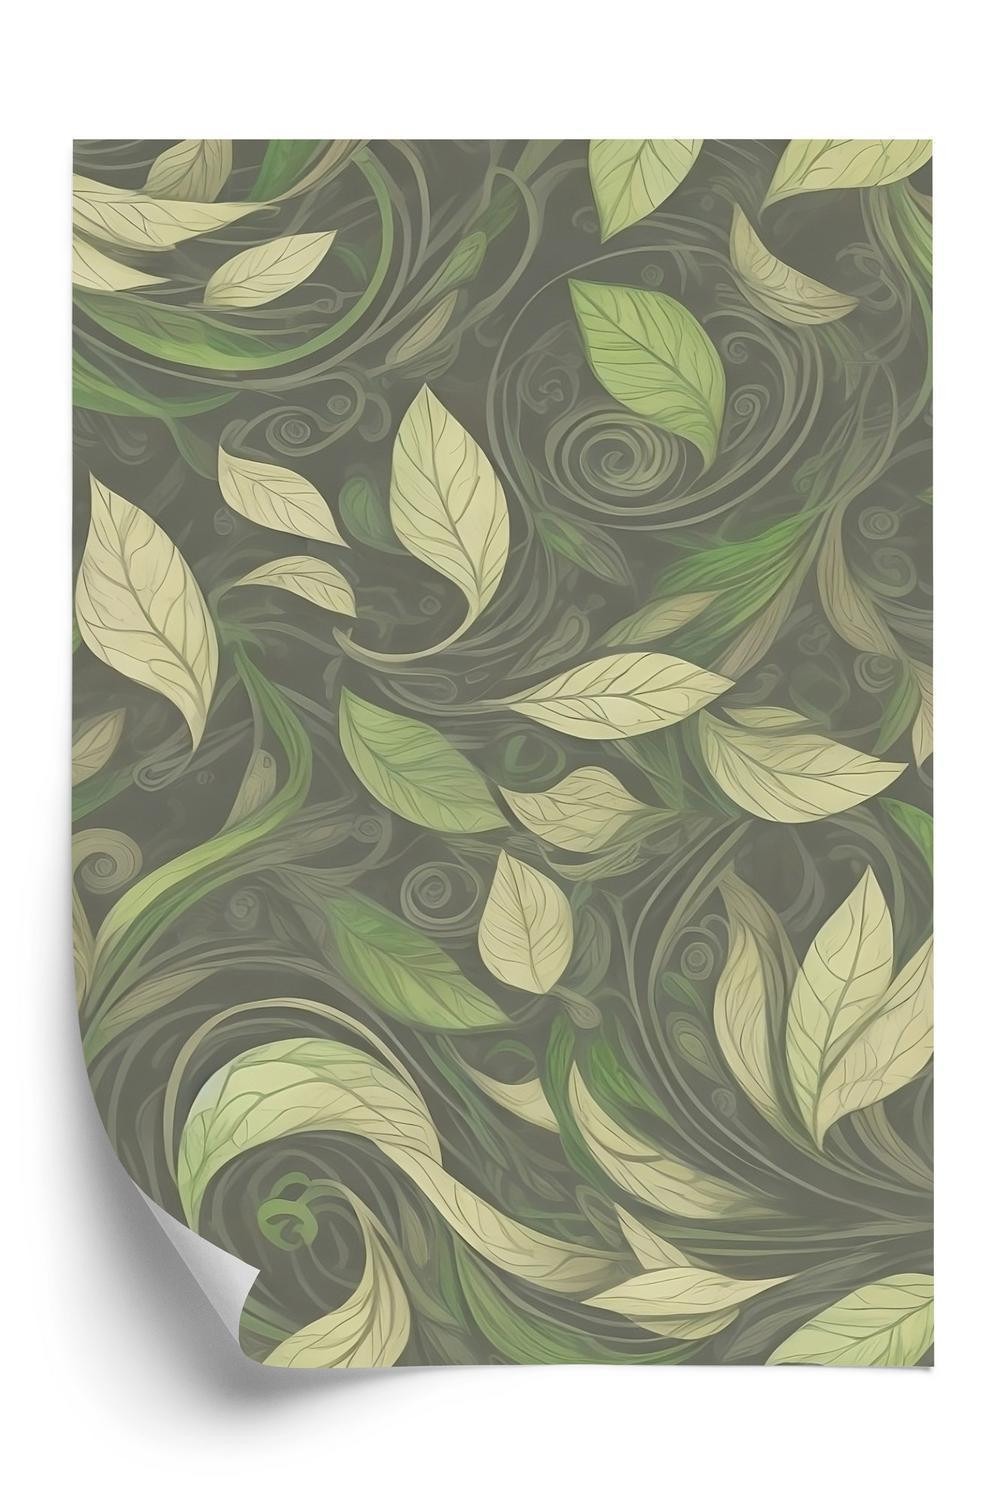 Plakat - Botanisk mønster af blade i grønne nuancer